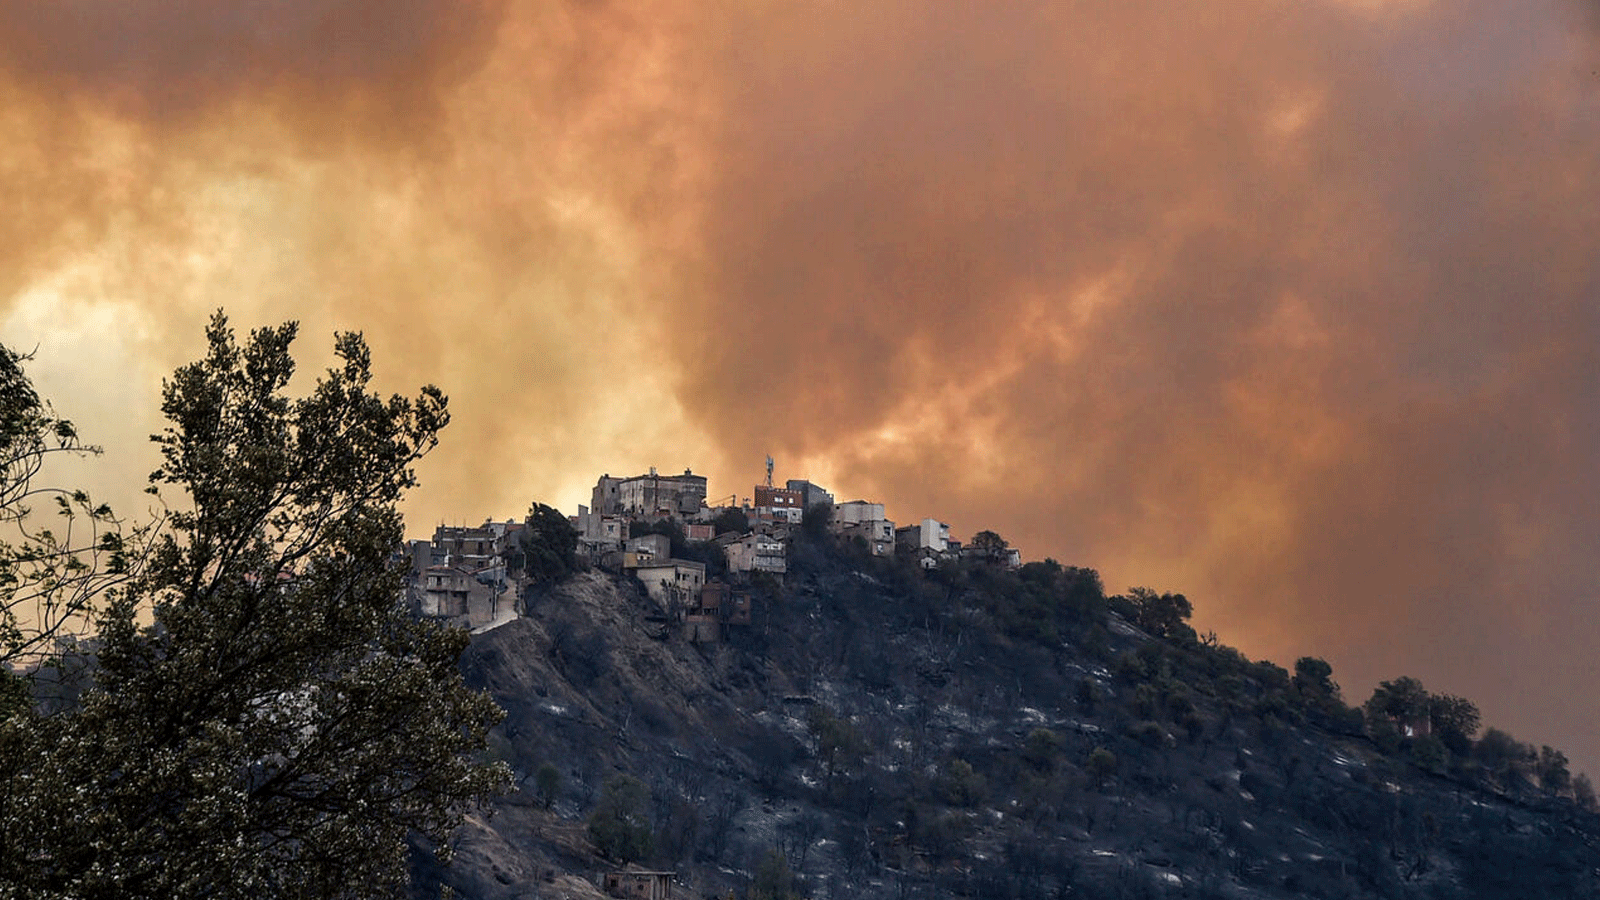 الدخان يتصاعد من حريق غابات في التلال الحرجية بمنطقة القبائل شرق العاصمة الجزائر. بتاريخ 10 آب/ أغسطس 2021.